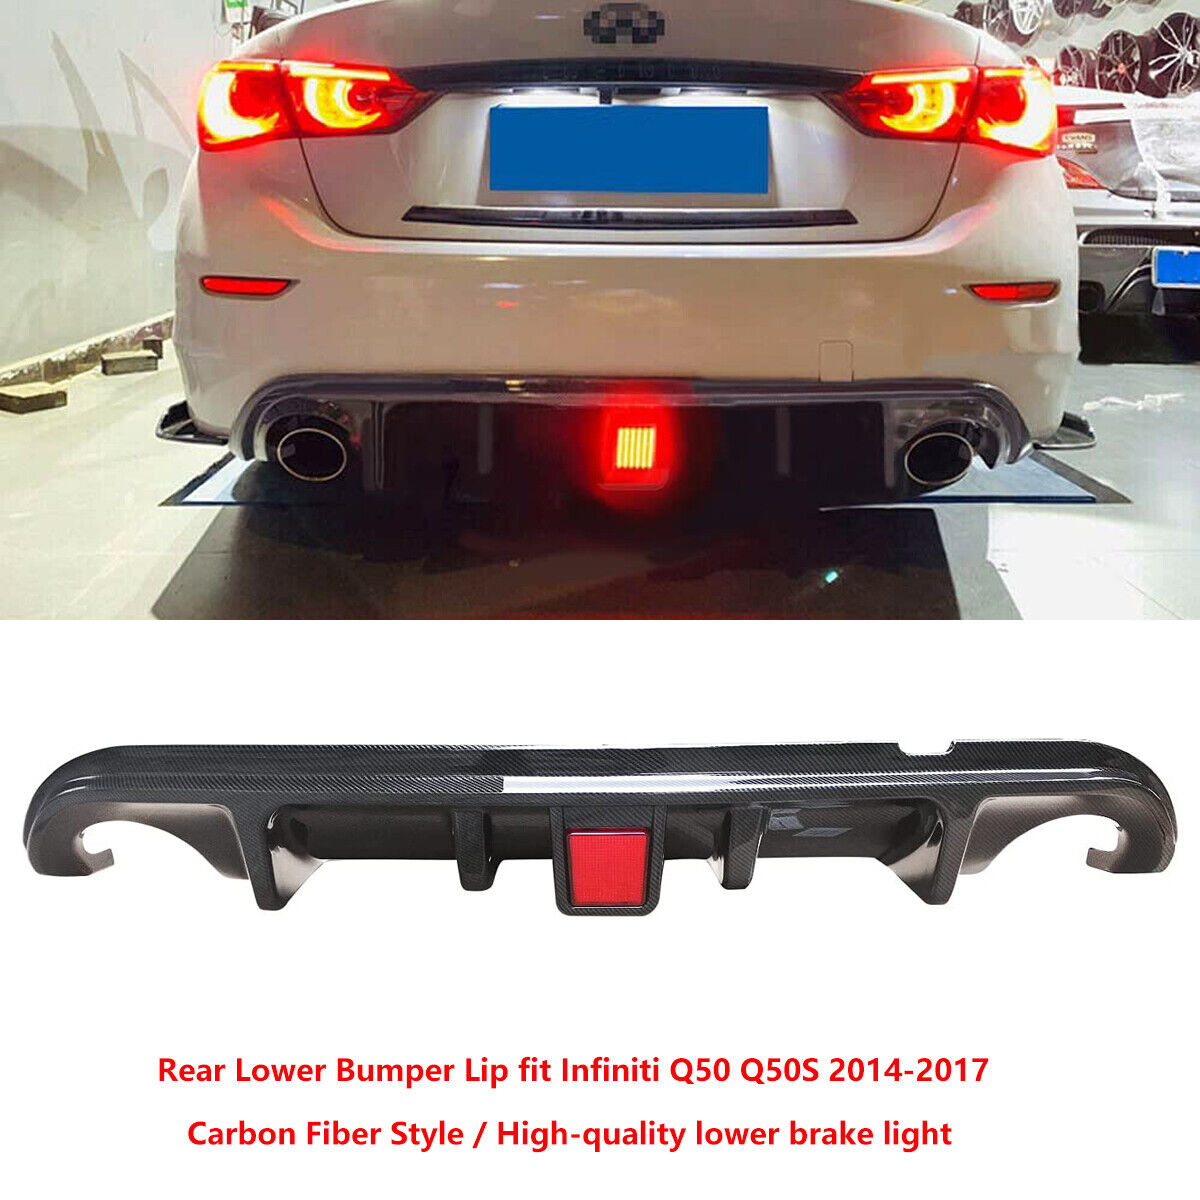 New Carbon Fiber Rear Bumper Diffuser Lip fit Infiniti Q50 2014-2017 LED LIGHT